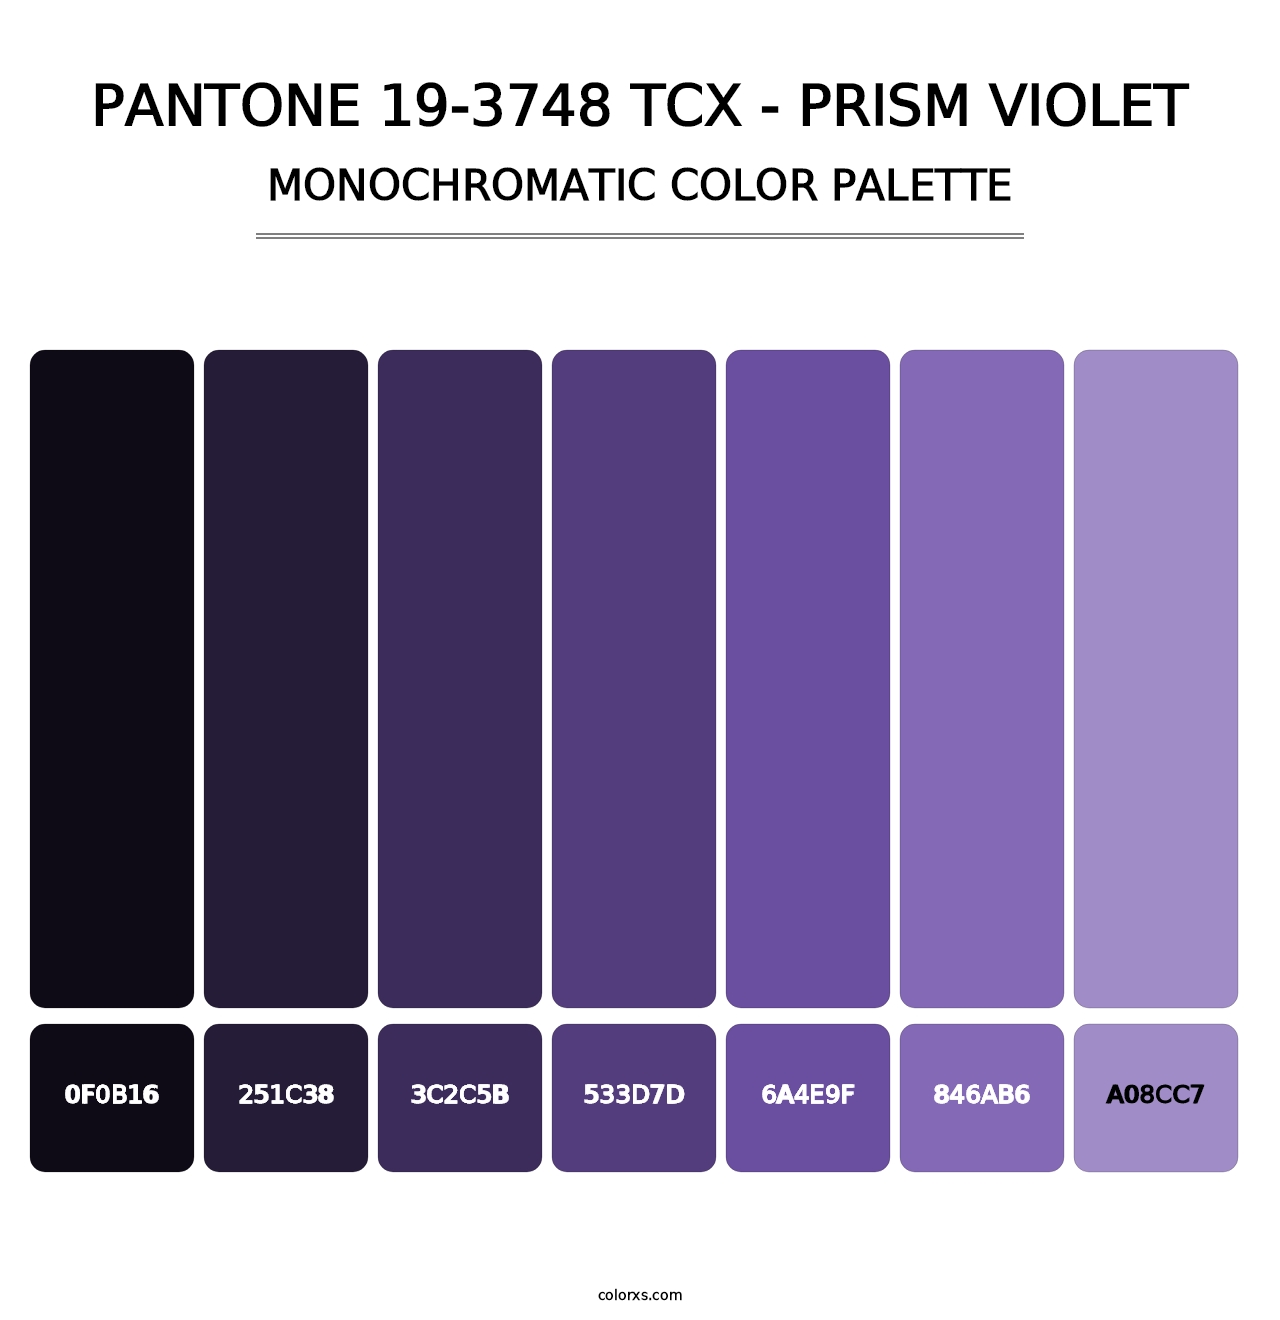 PANTONE 19-3748 TCX - Prism Violet - Monochromatic Color Palette